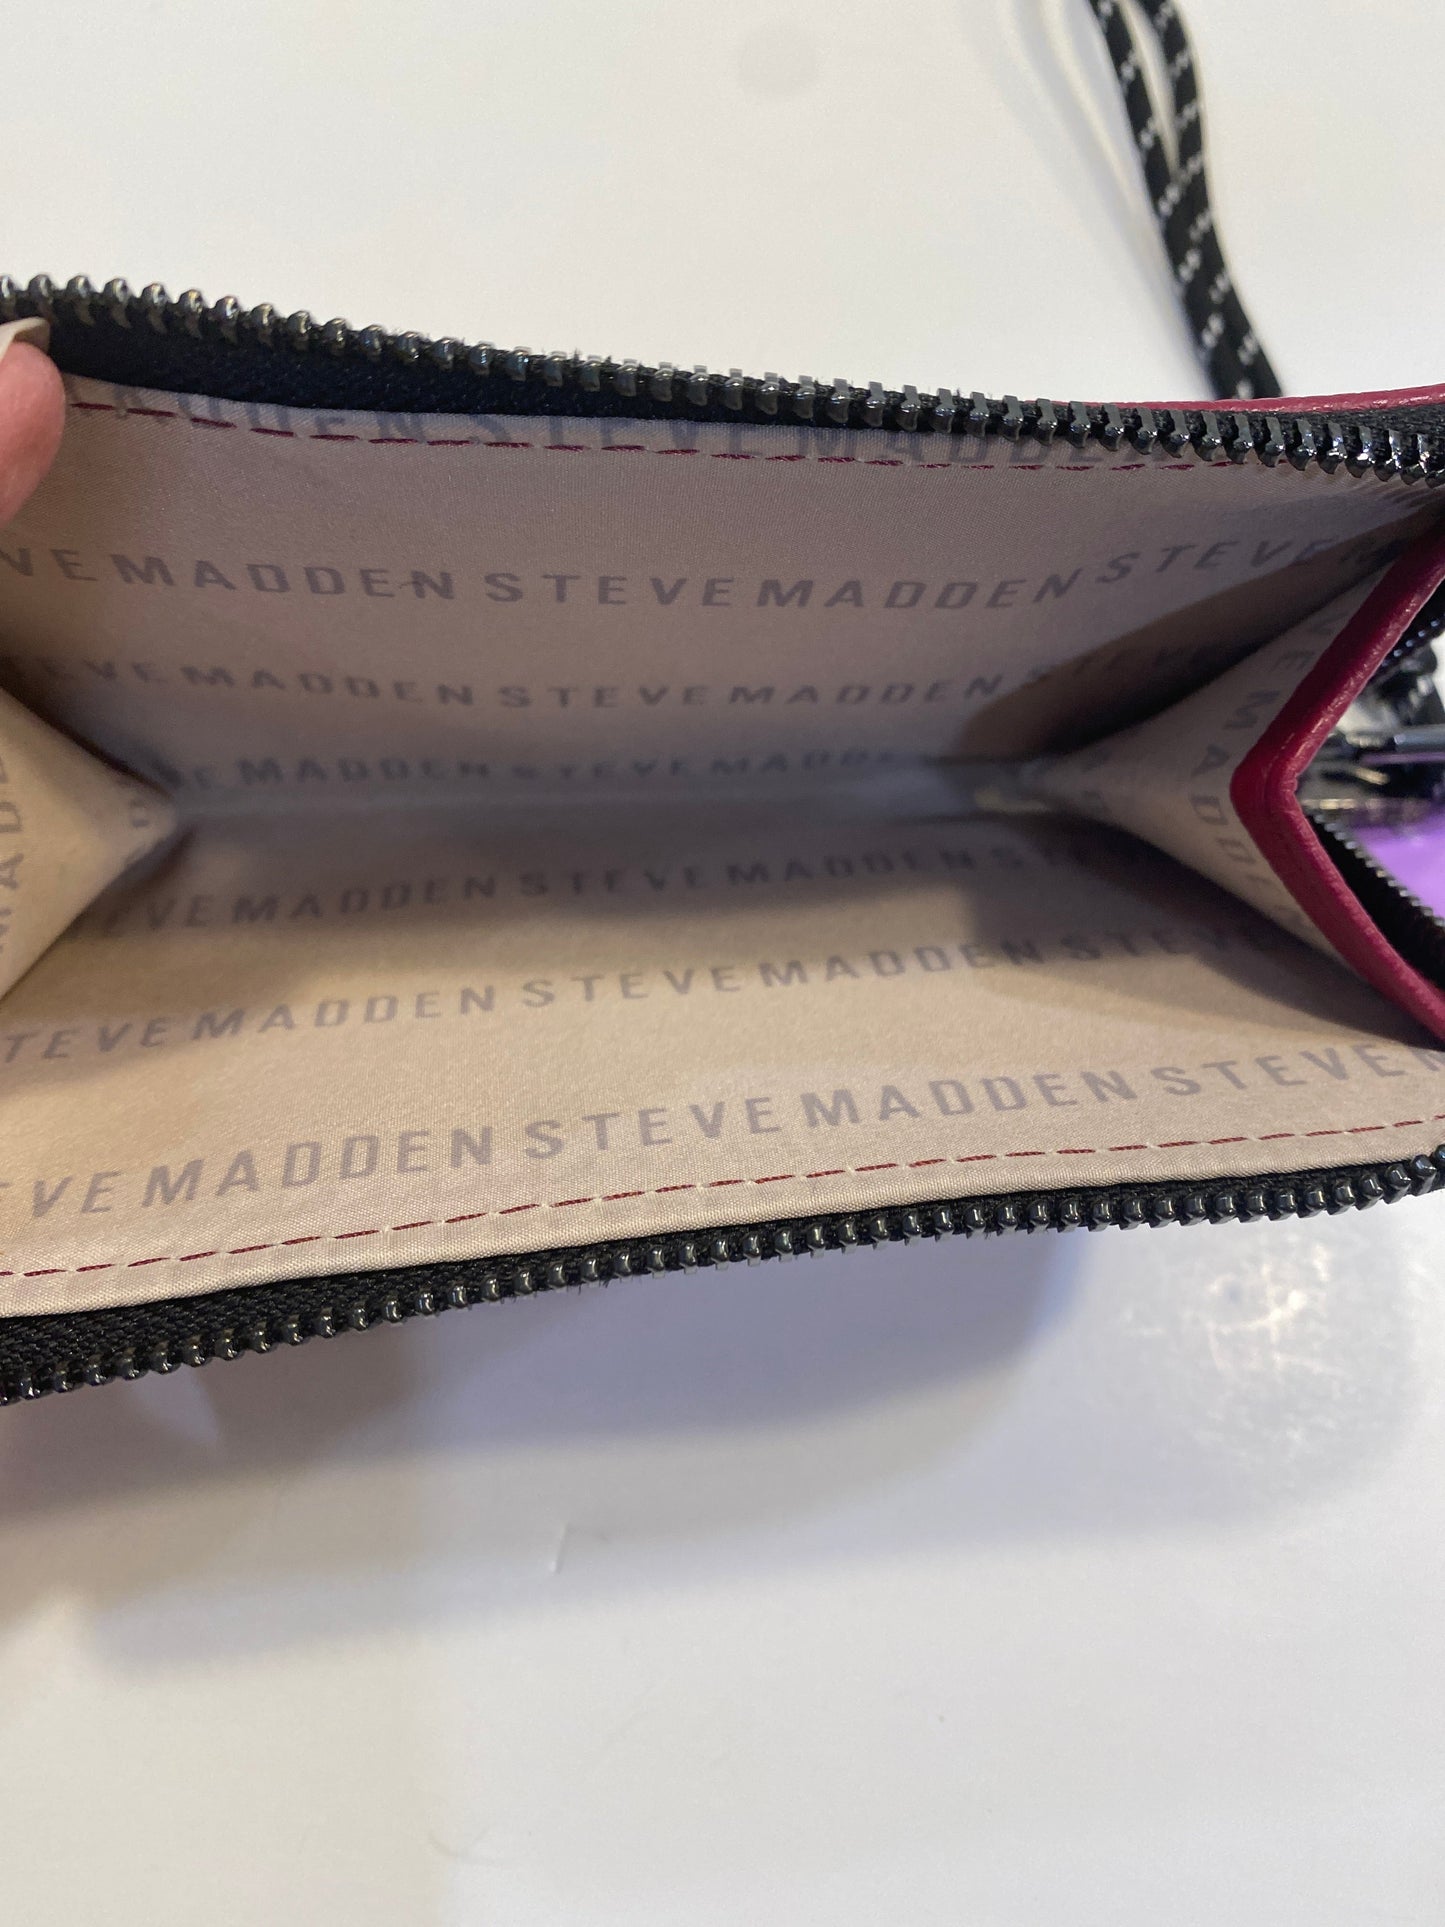 Wallet Steve Madden, Size Medium